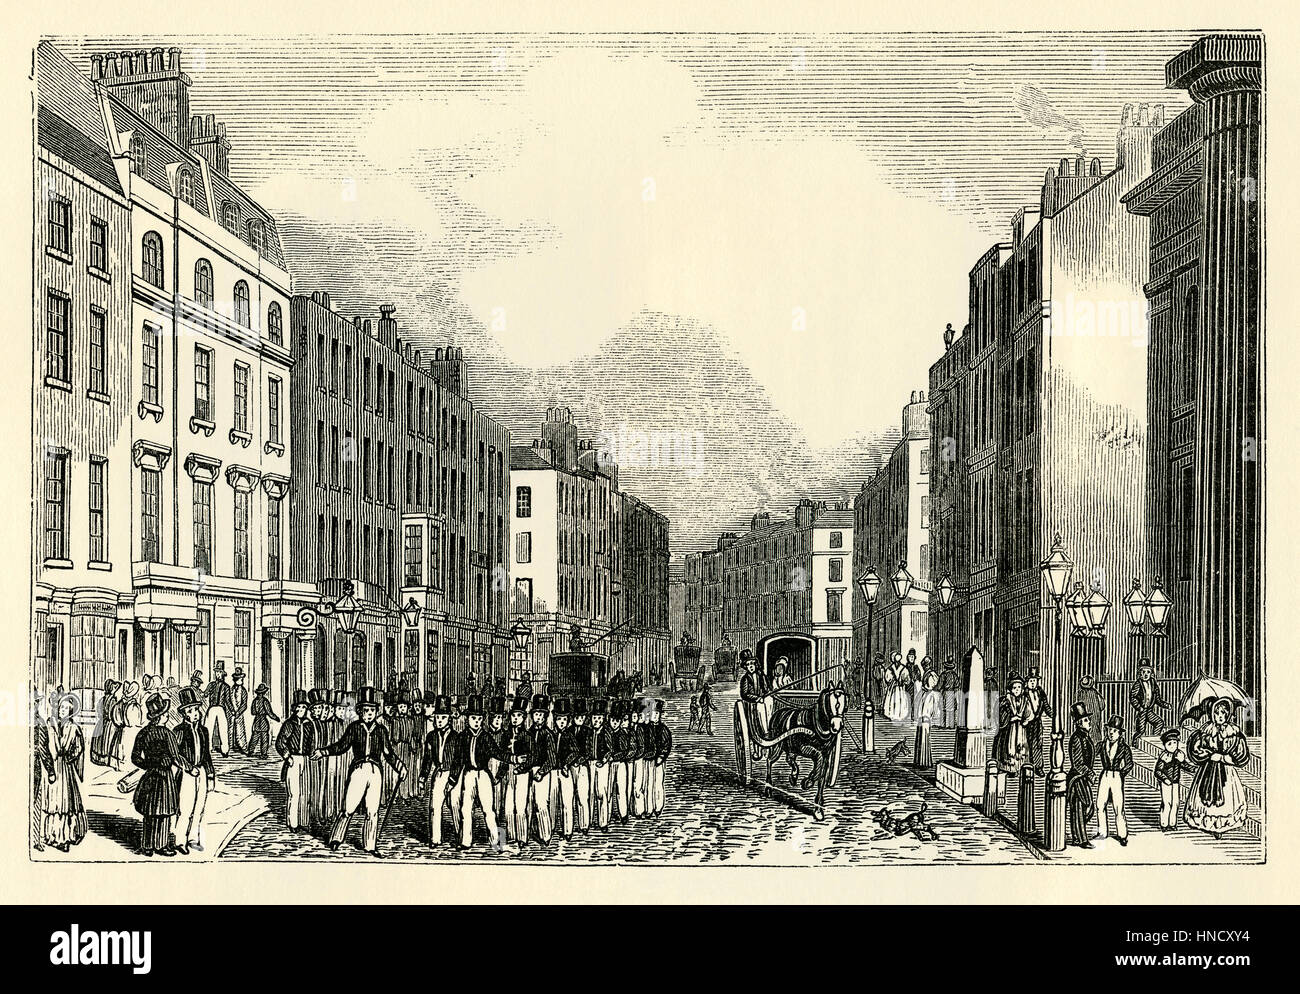 Bow Street et Bow Street Runners (début des policiers), Covent Garden, Londres - une gravure ancienne c. 1800 Banque D'Images